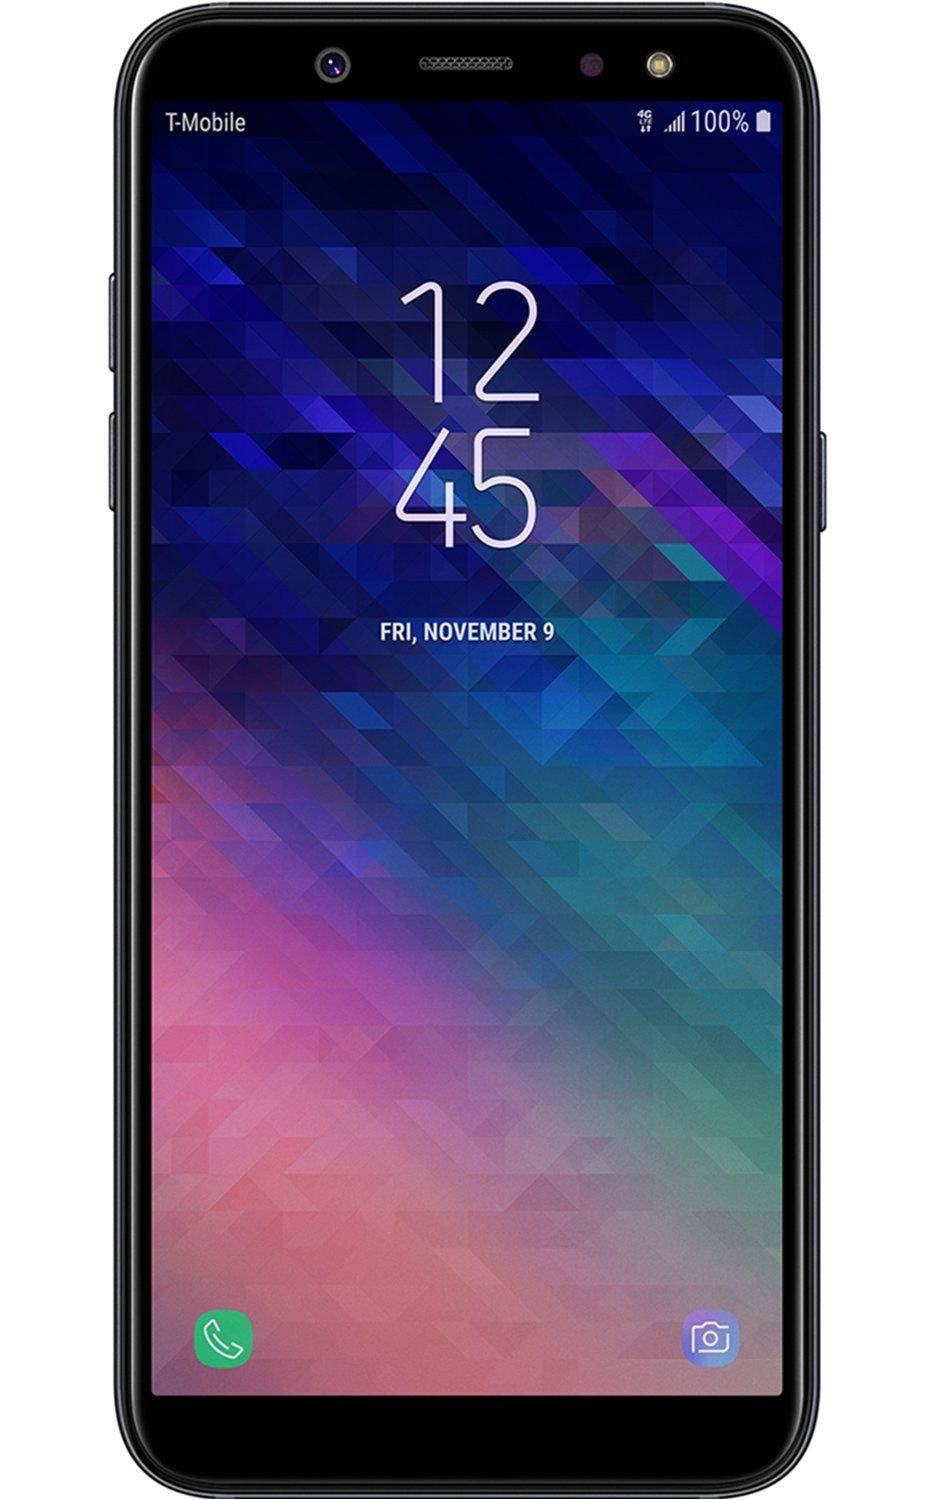 Samsung Galaxy A6 (2018) स्मार्टफोन को एंड्रॉयड पाई का बीटा अपडेट मिलना शुरू हुआ